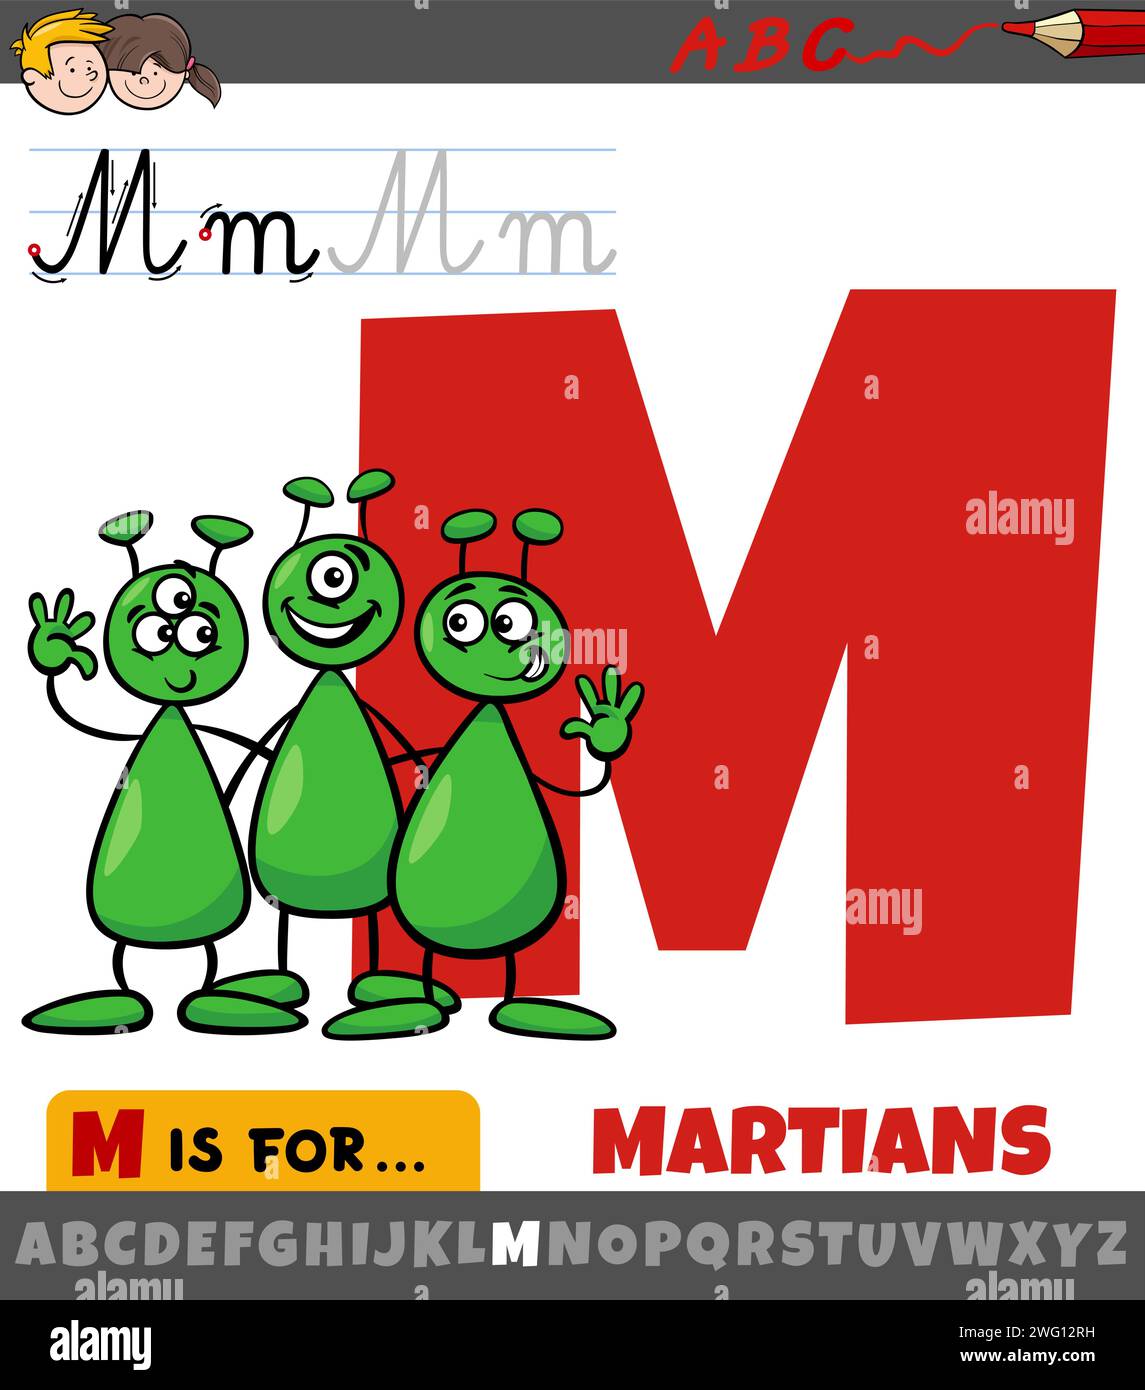 Pädagogische Zeichentrickillustration des Buchstabens M aus dem Alphabet mit marsfiguren Stock Vektor